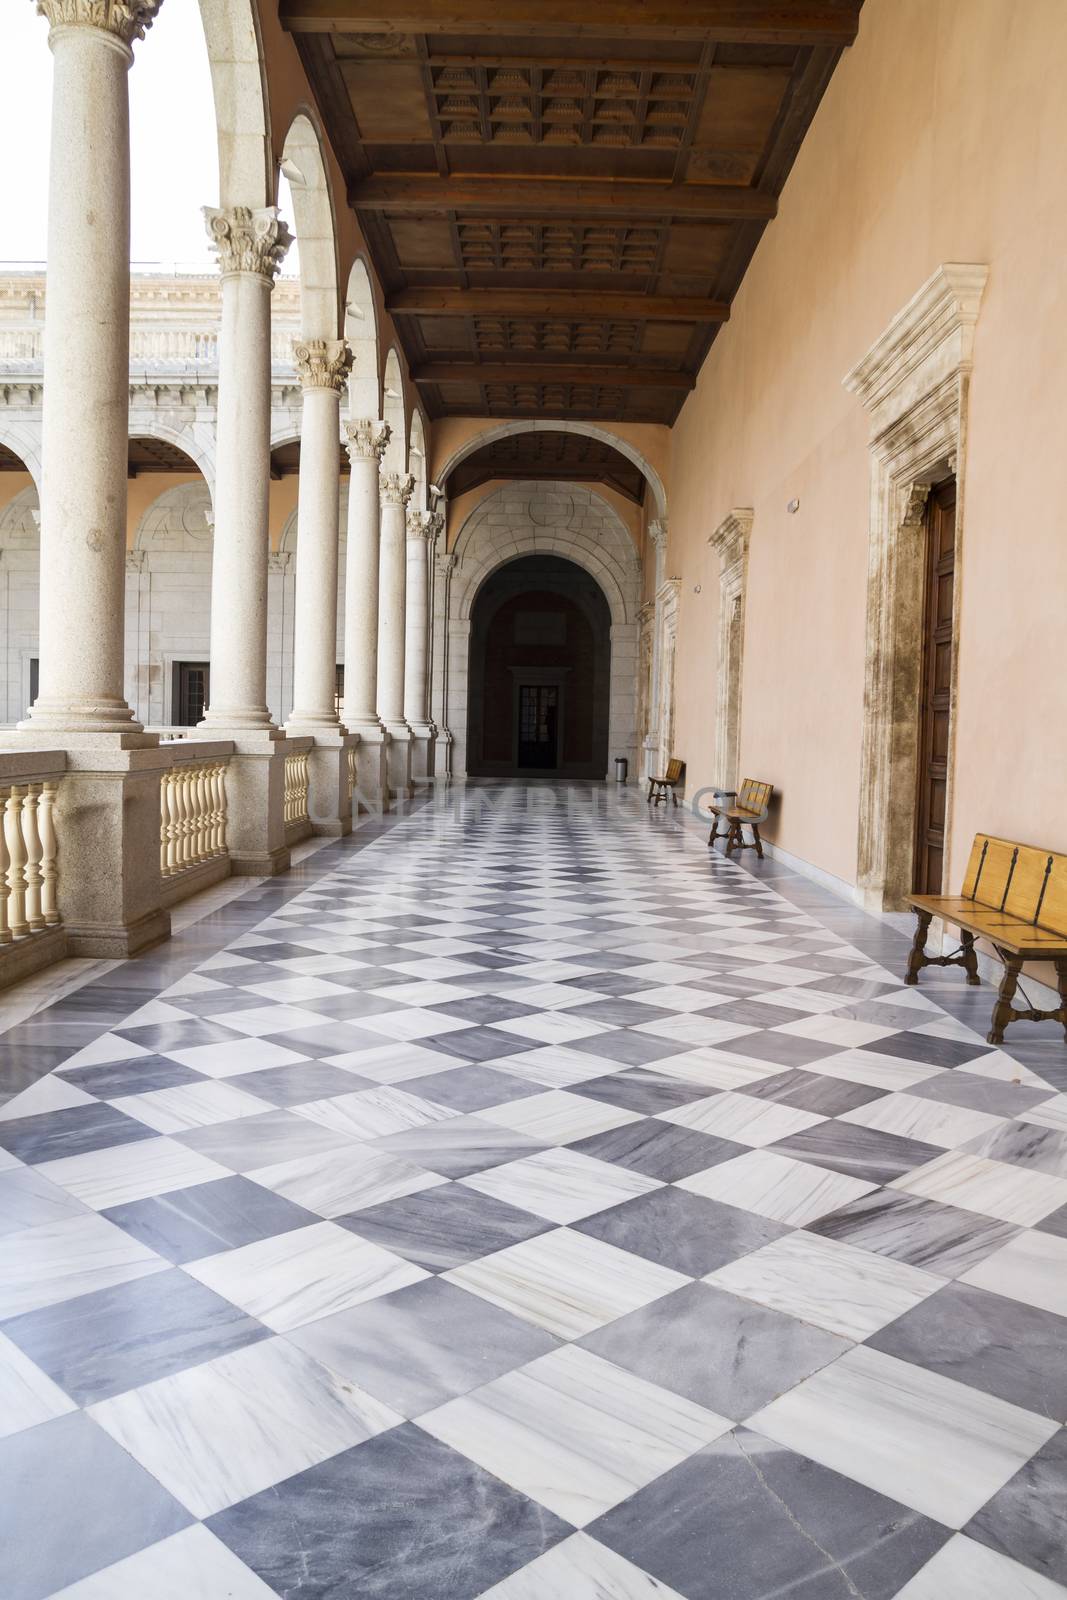 Fortification, Indoor palace, Alcazar de Toledo, Spain by FernandoCortes